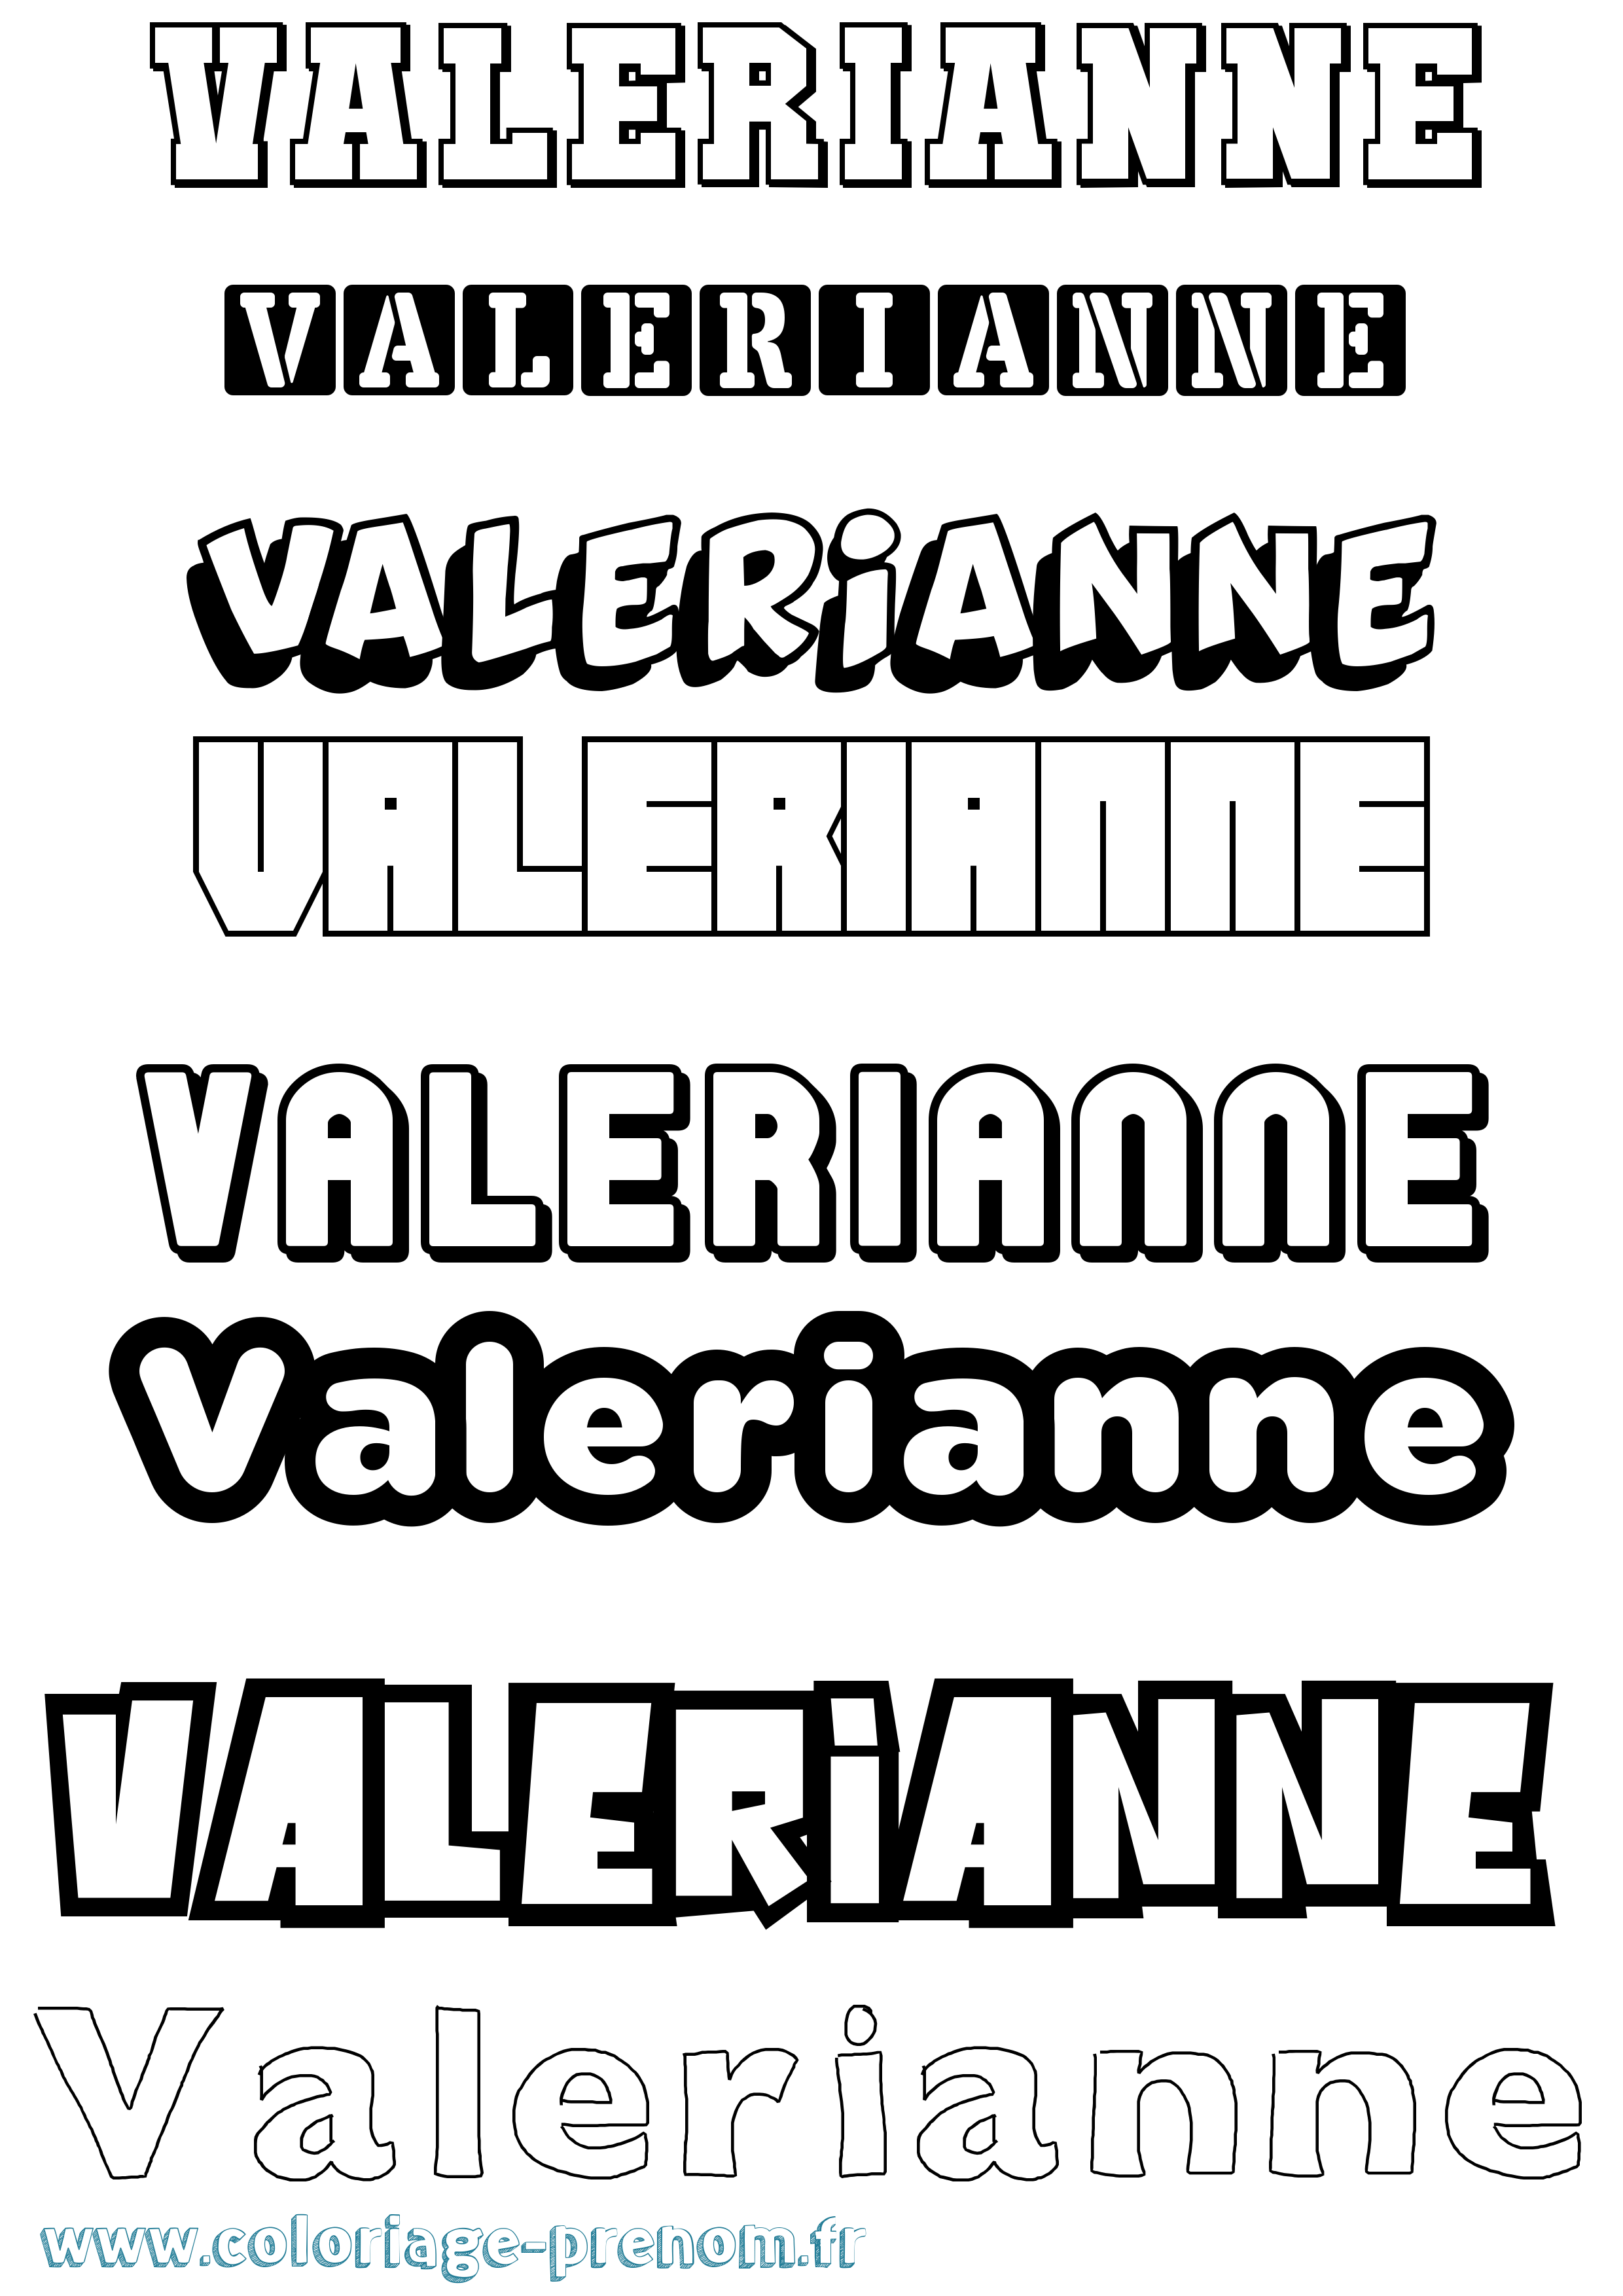 Coloriage prénom Valerianne Simple